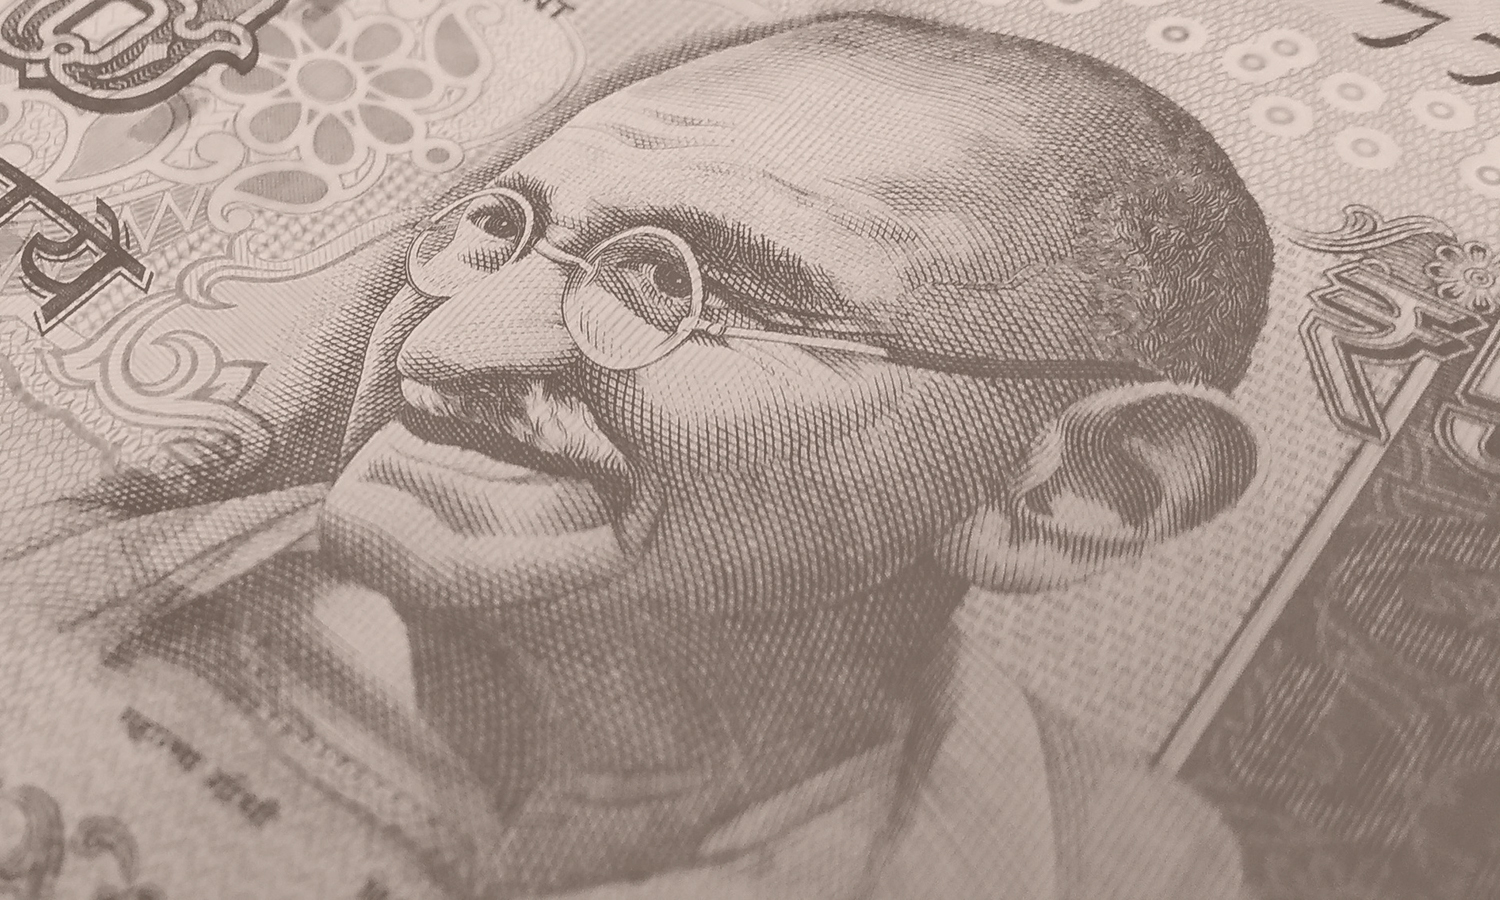  Mahatma Gandhi auf Geldschein